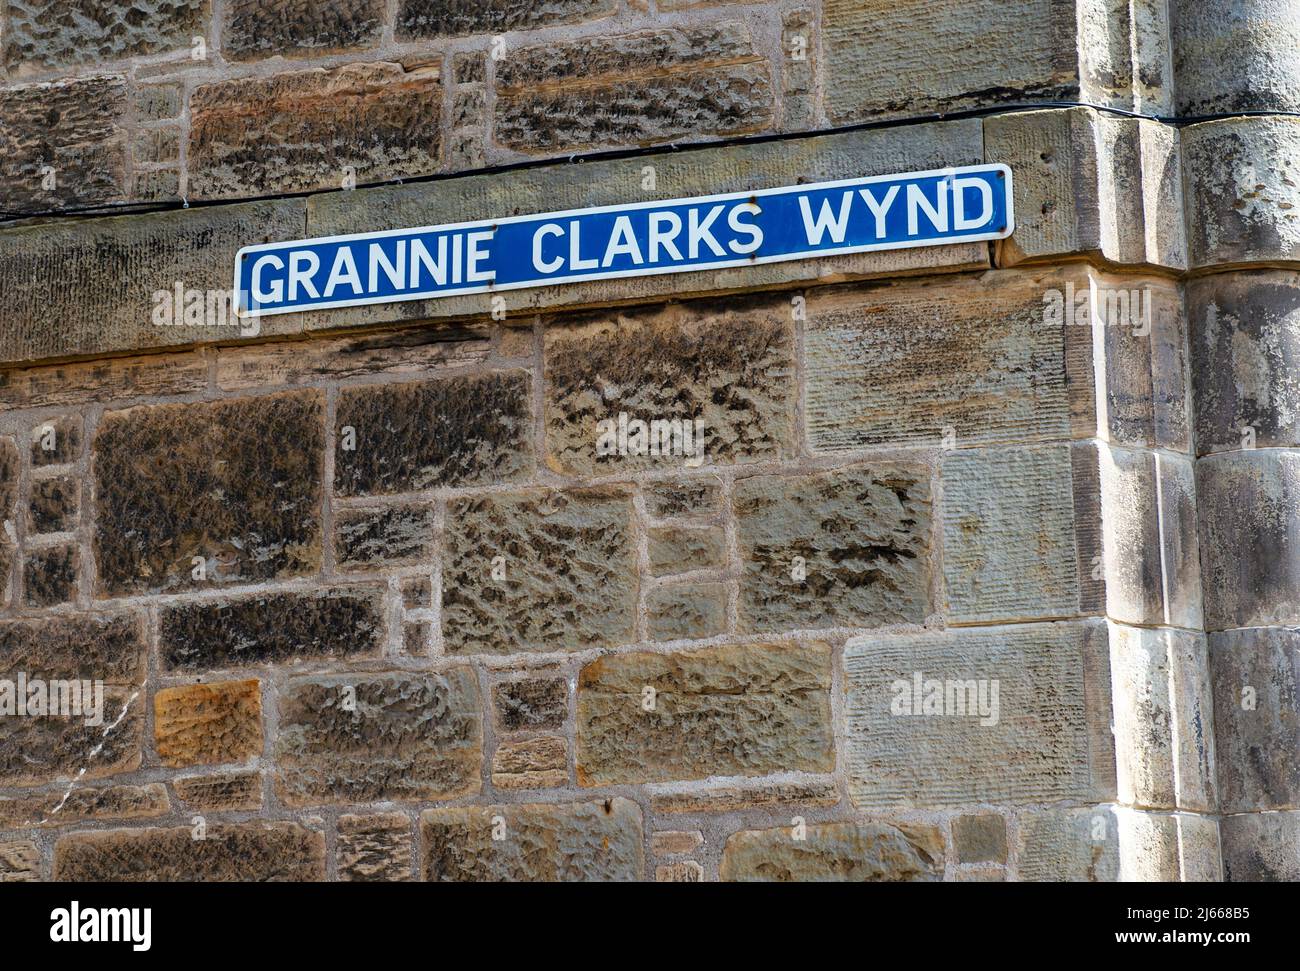 Grannie Clarks Wynd, St Andrews. La rue traverse les 18th et 1st fairways du Vieux parcours qui permet d'accéder à la plage de West Sands. Banque D'Images